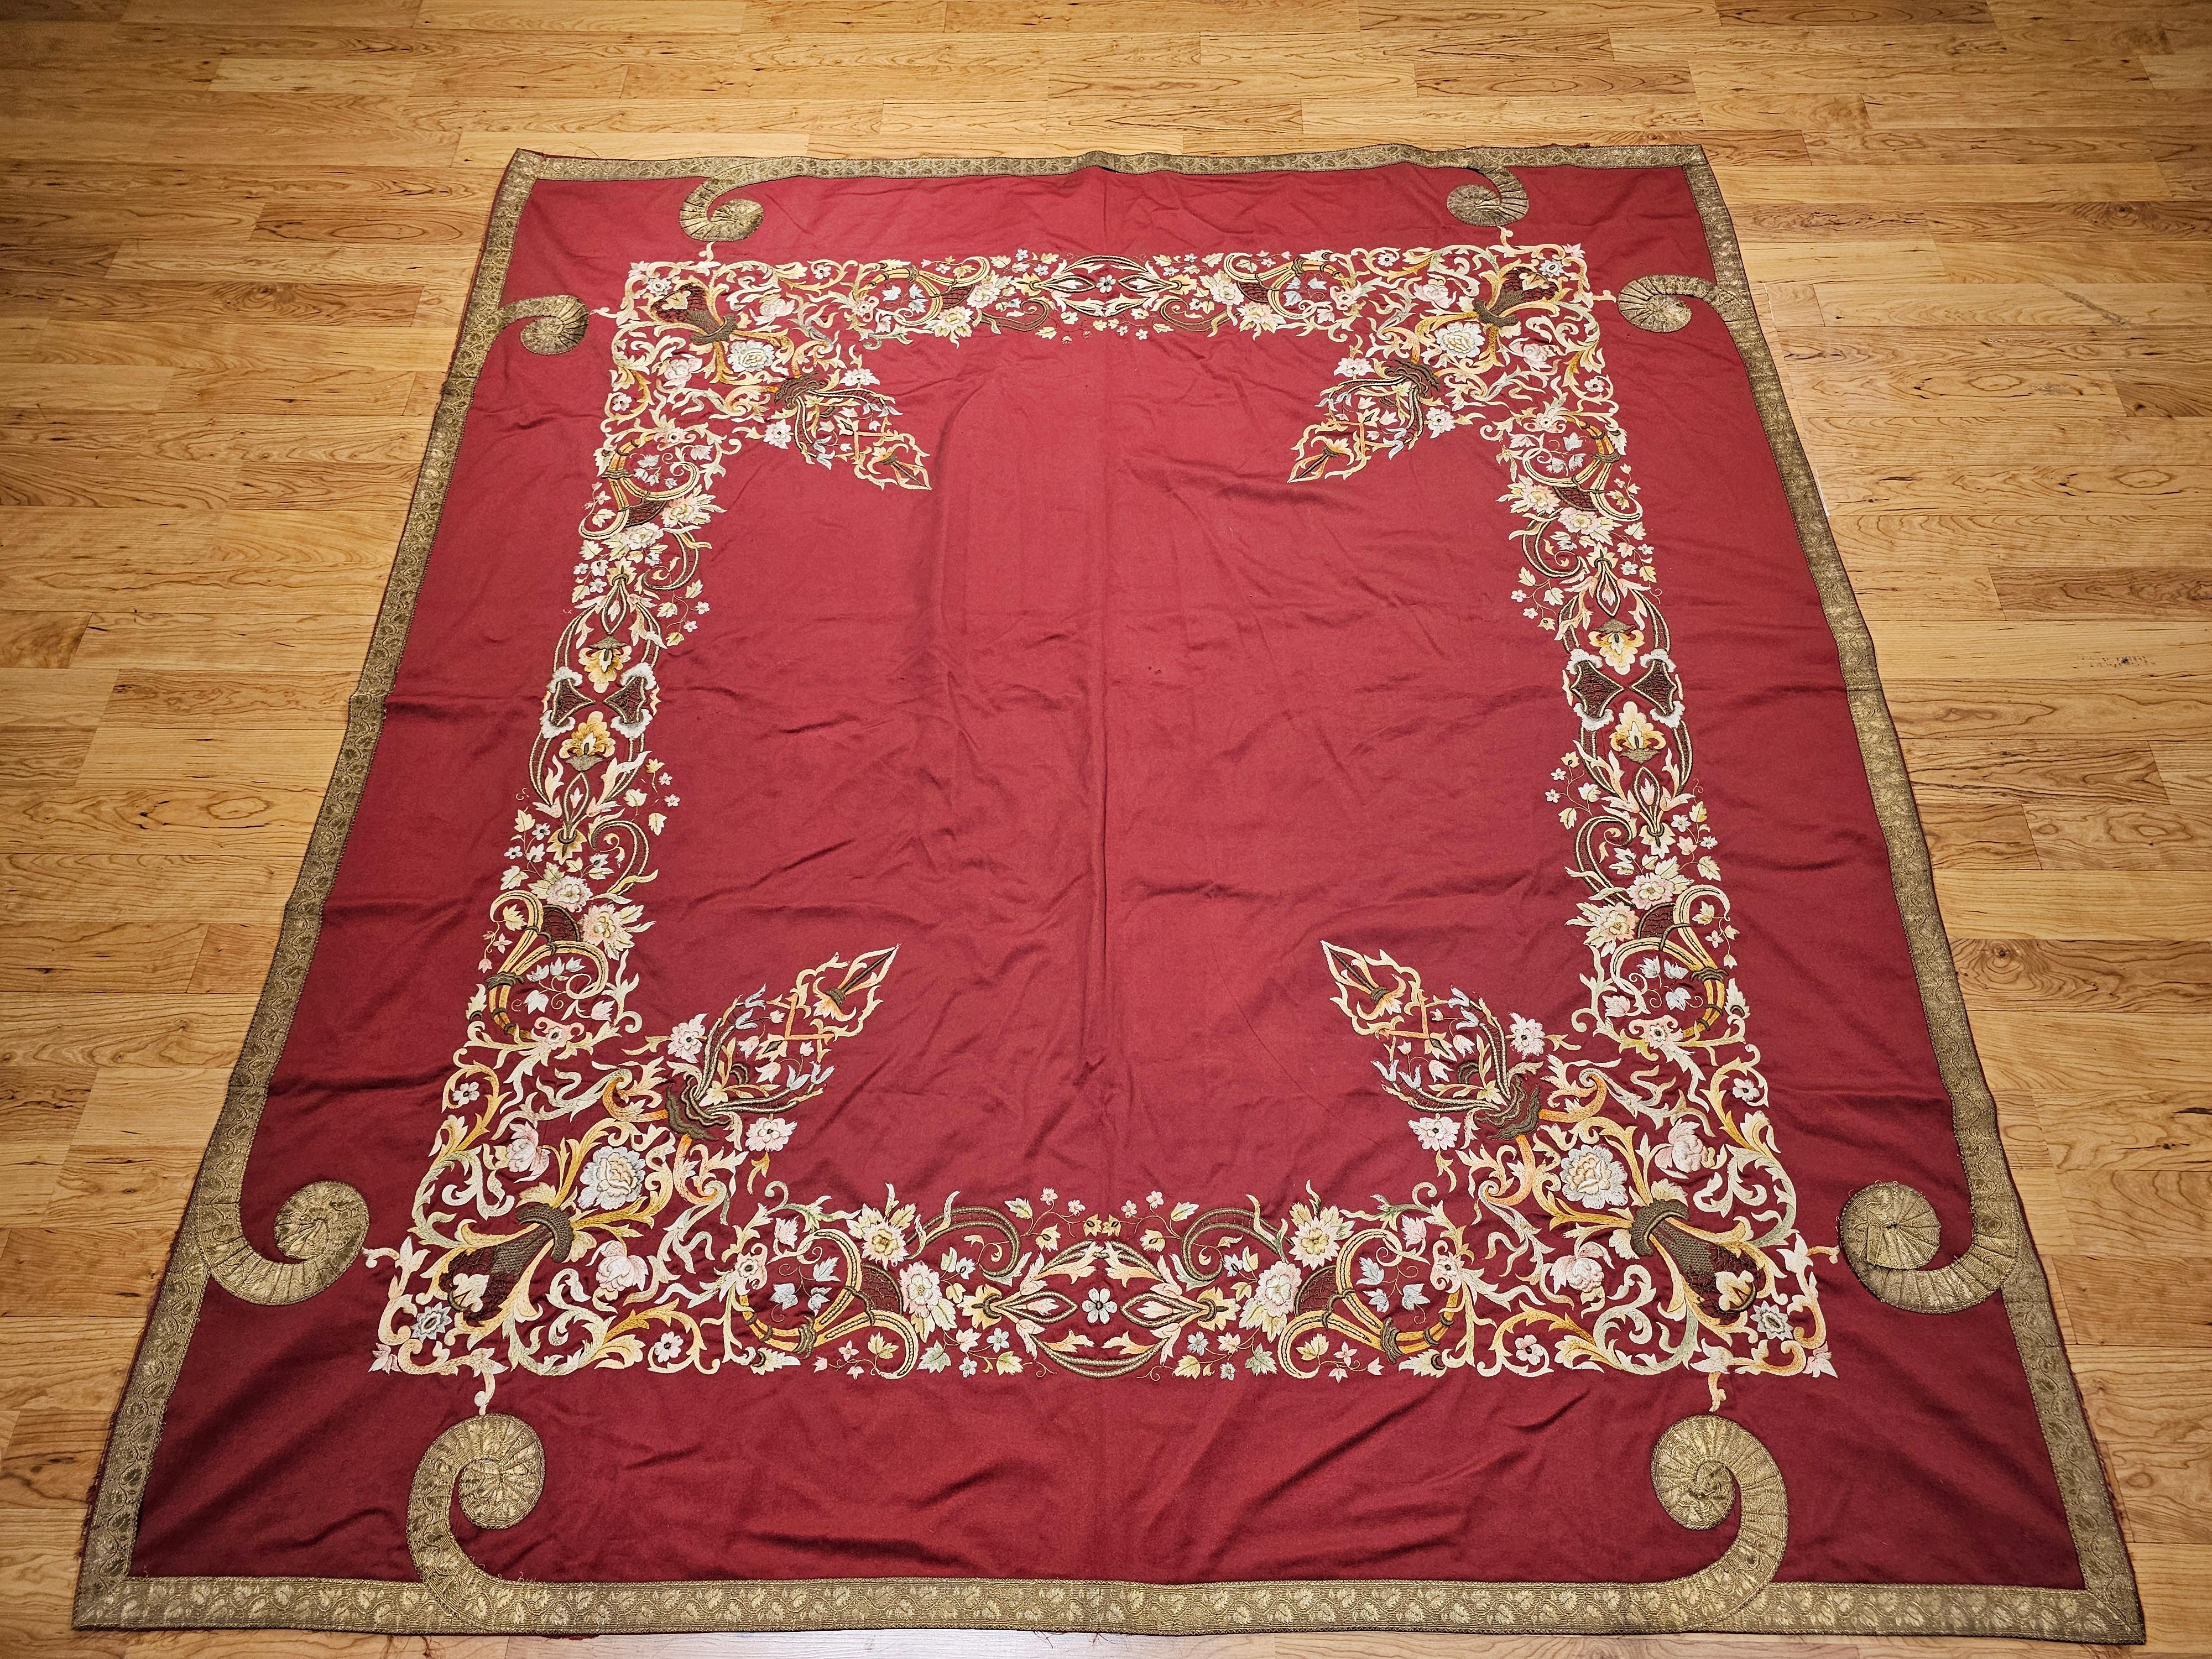  Ottomane aus dem 19. Jahrhundert  Seiden- und Goldfaden-Stickerei Textil.  Der quadratische Stoff aus roter Baumwolle ist mit einer aufwendigen Seiden- und Goldfadenstickerei aus Arabesken, Blumen und Schriftrollen verziert, die von einem breiten